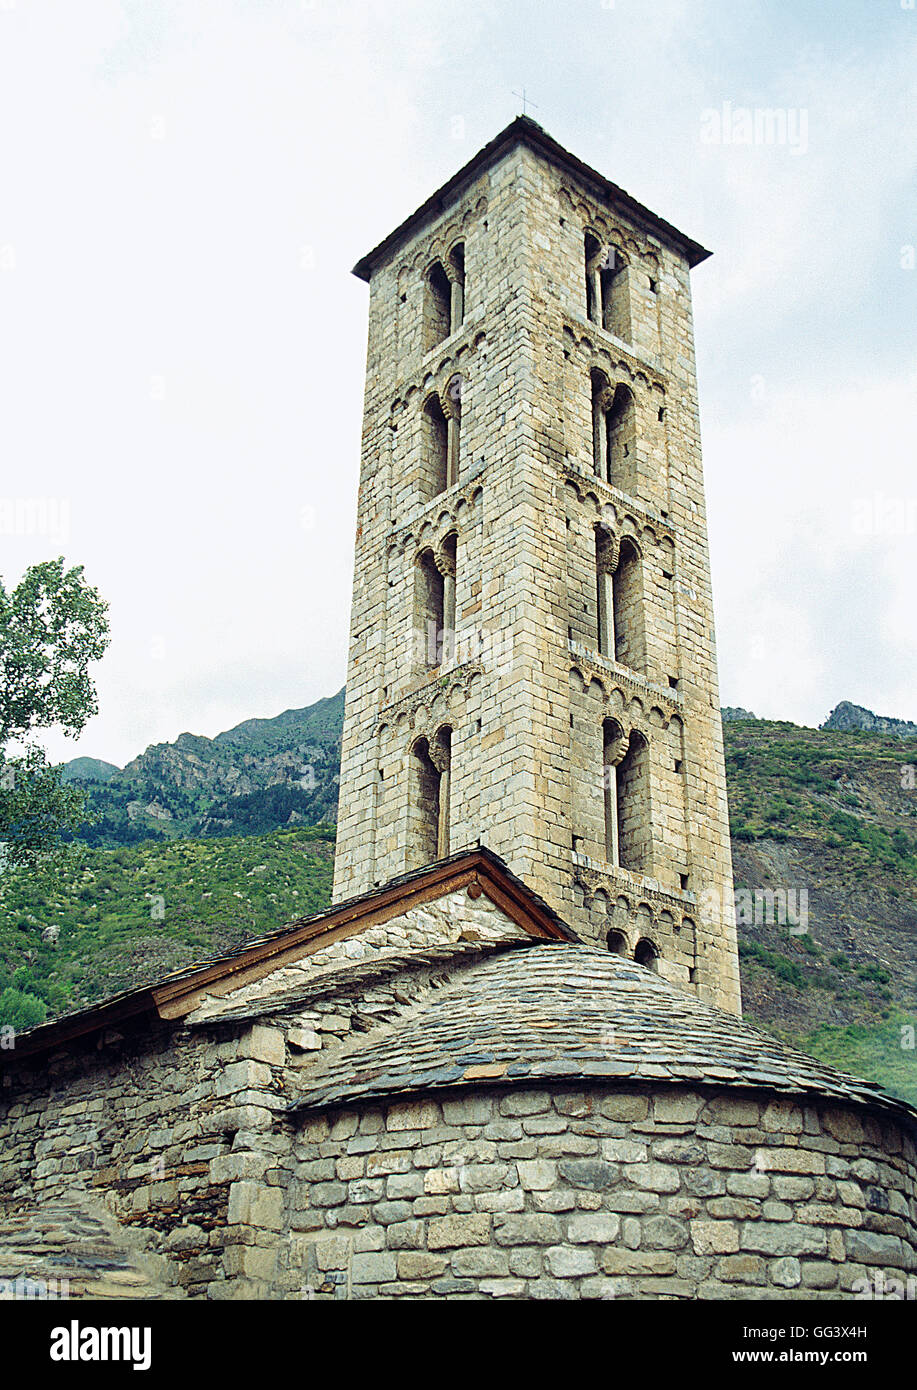 Église de Santa Eulalia, Erill la Vall, vallée de Boi, province Lerida, Catalogne, Espagne. Banque D'Images